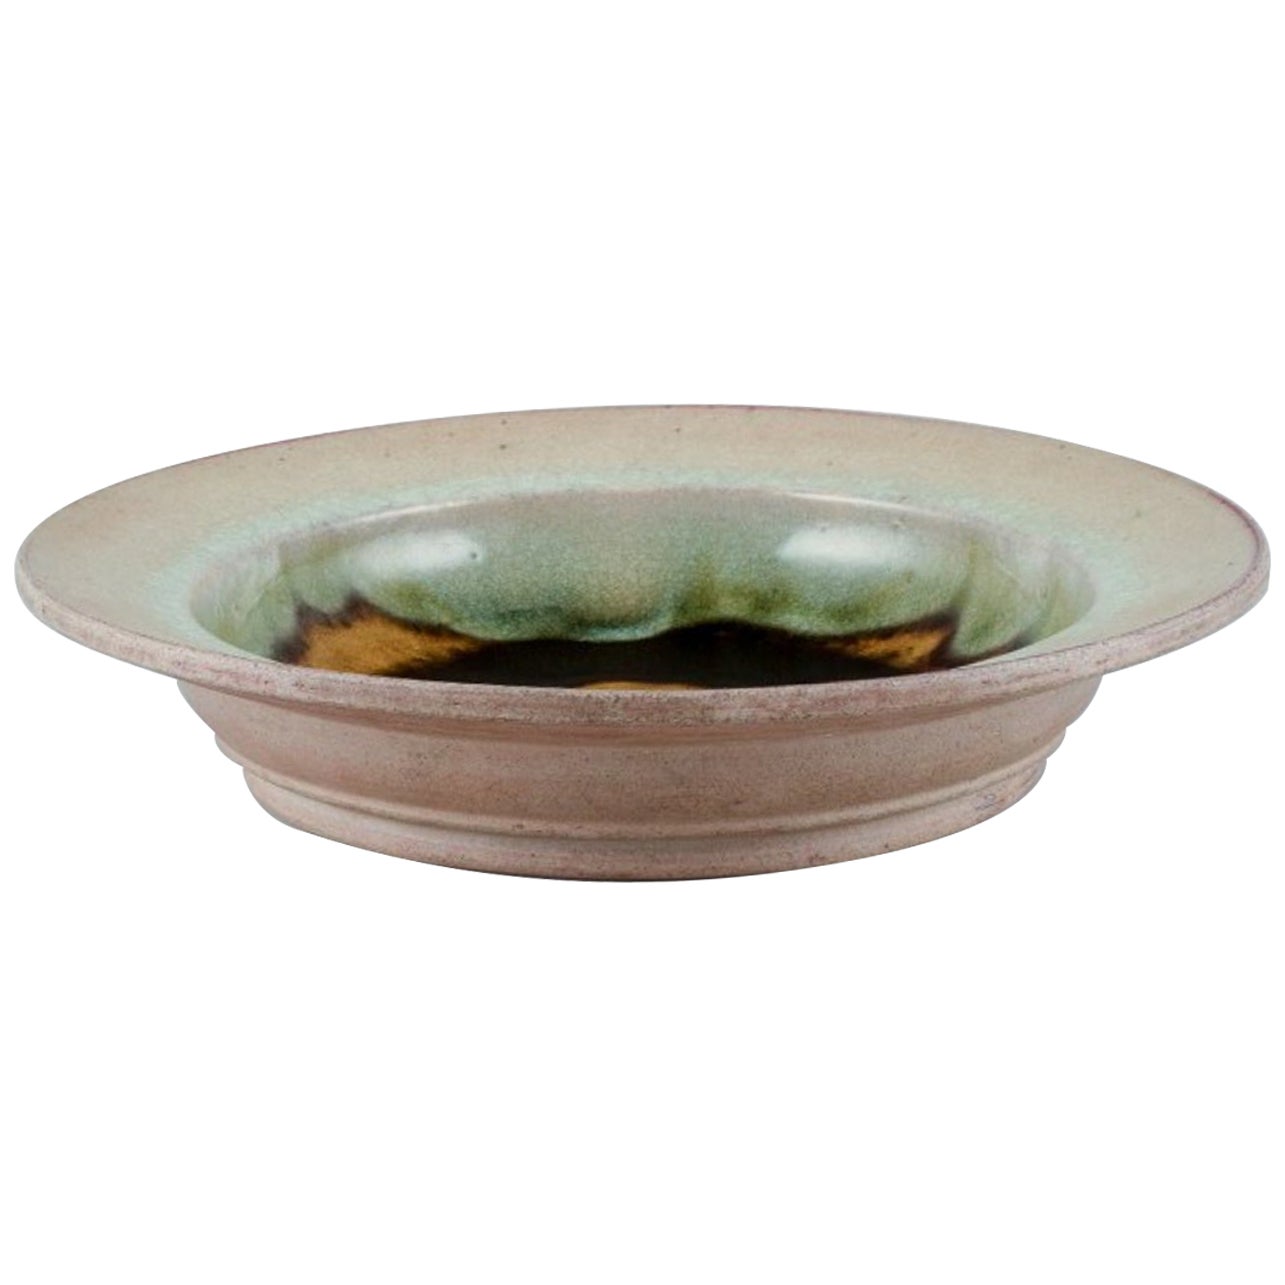 Nils Kähler for Kähler. Large ceramic bowl in modernist design.